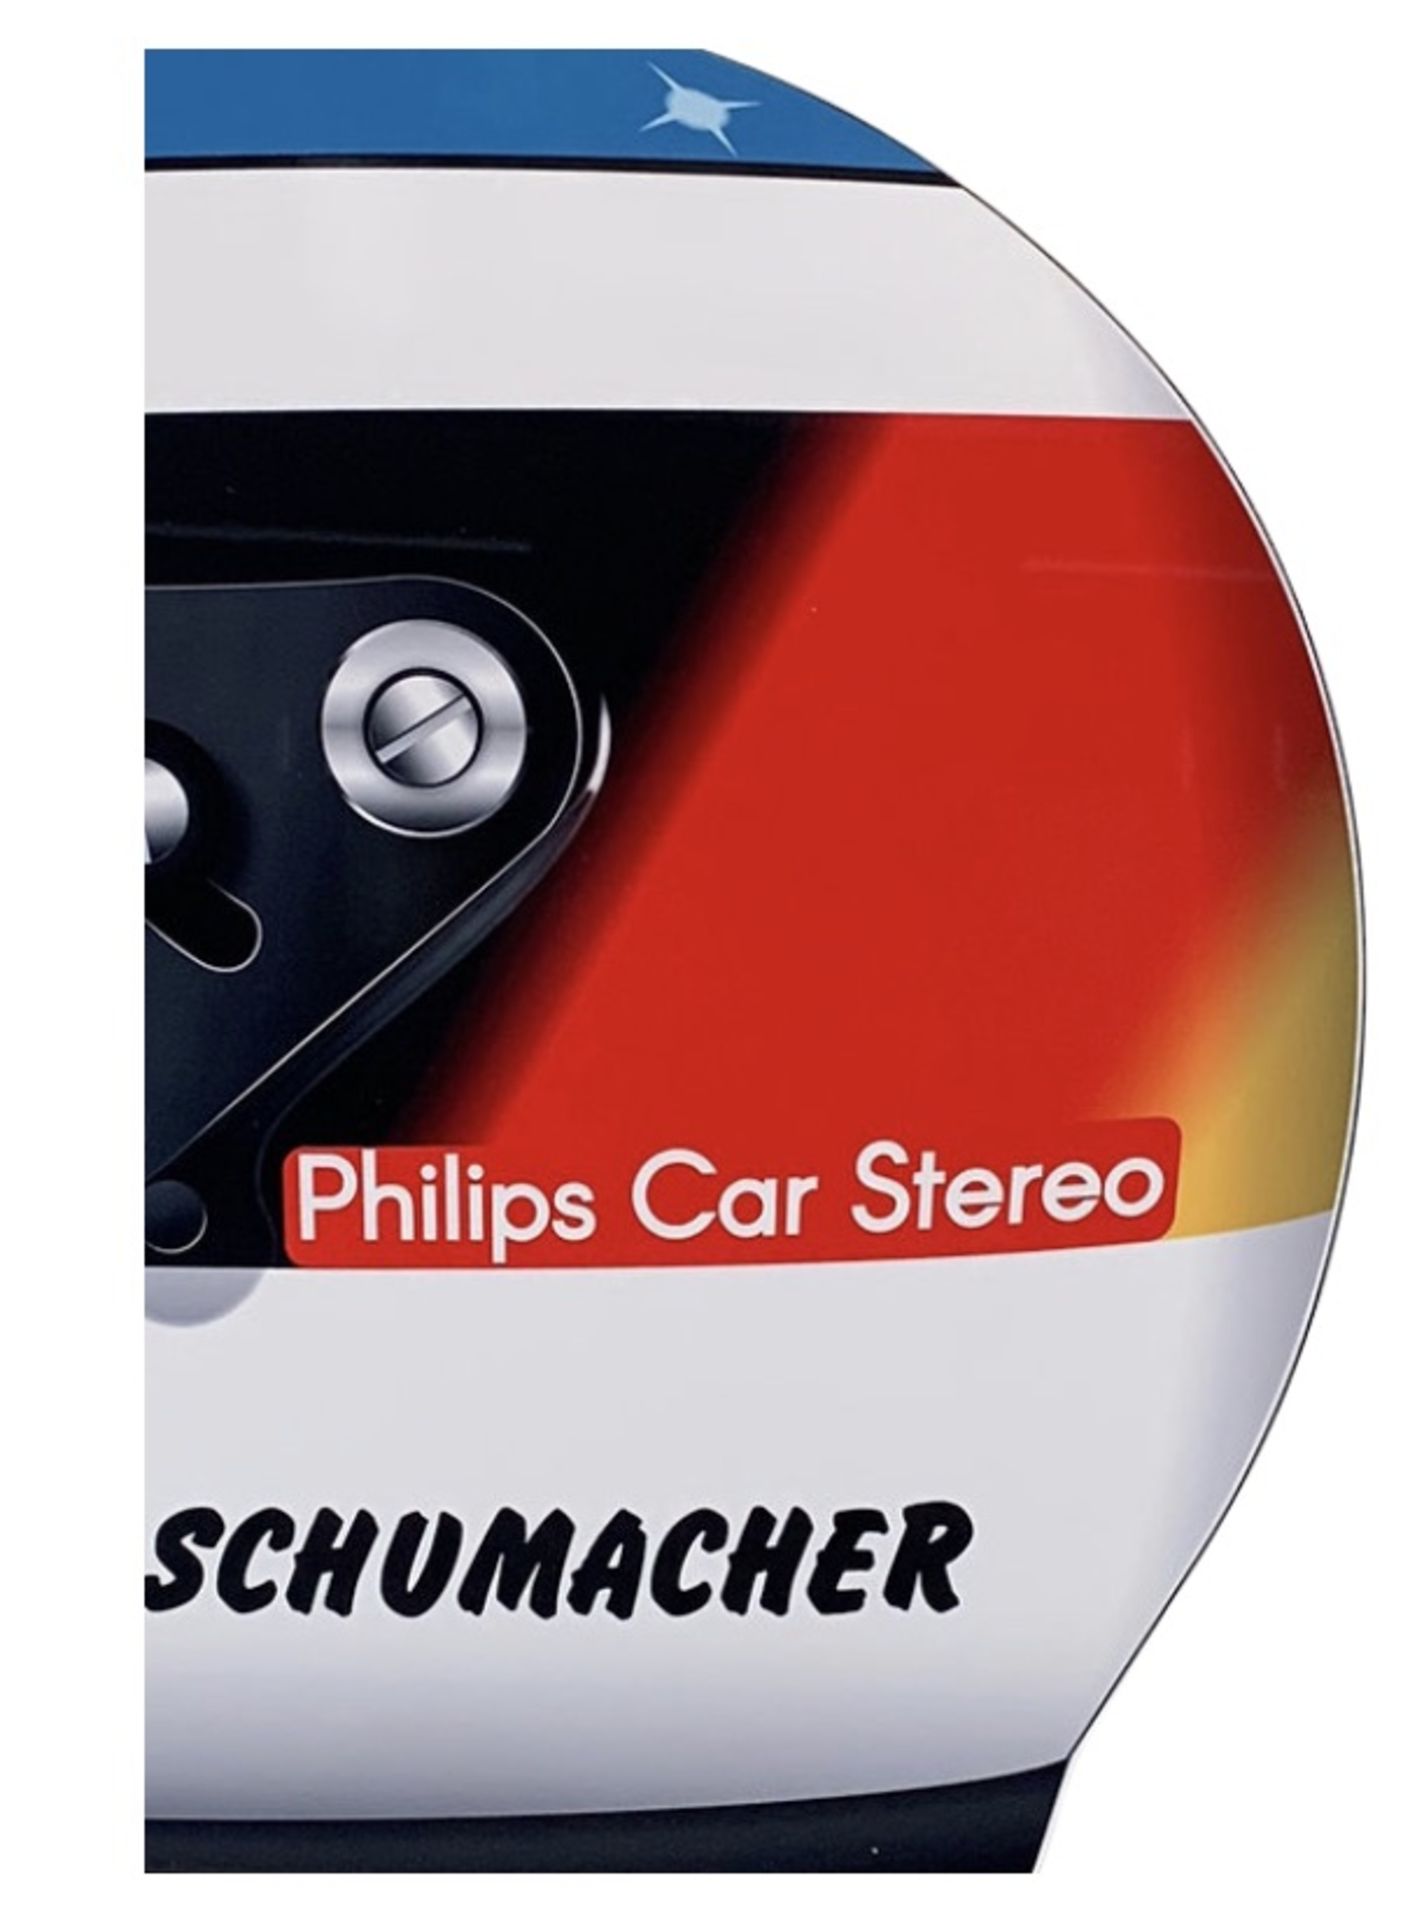 Michael Schumacher 1991 F1 Helmet Aluminum Garage Wall Display - Image 4 of 6